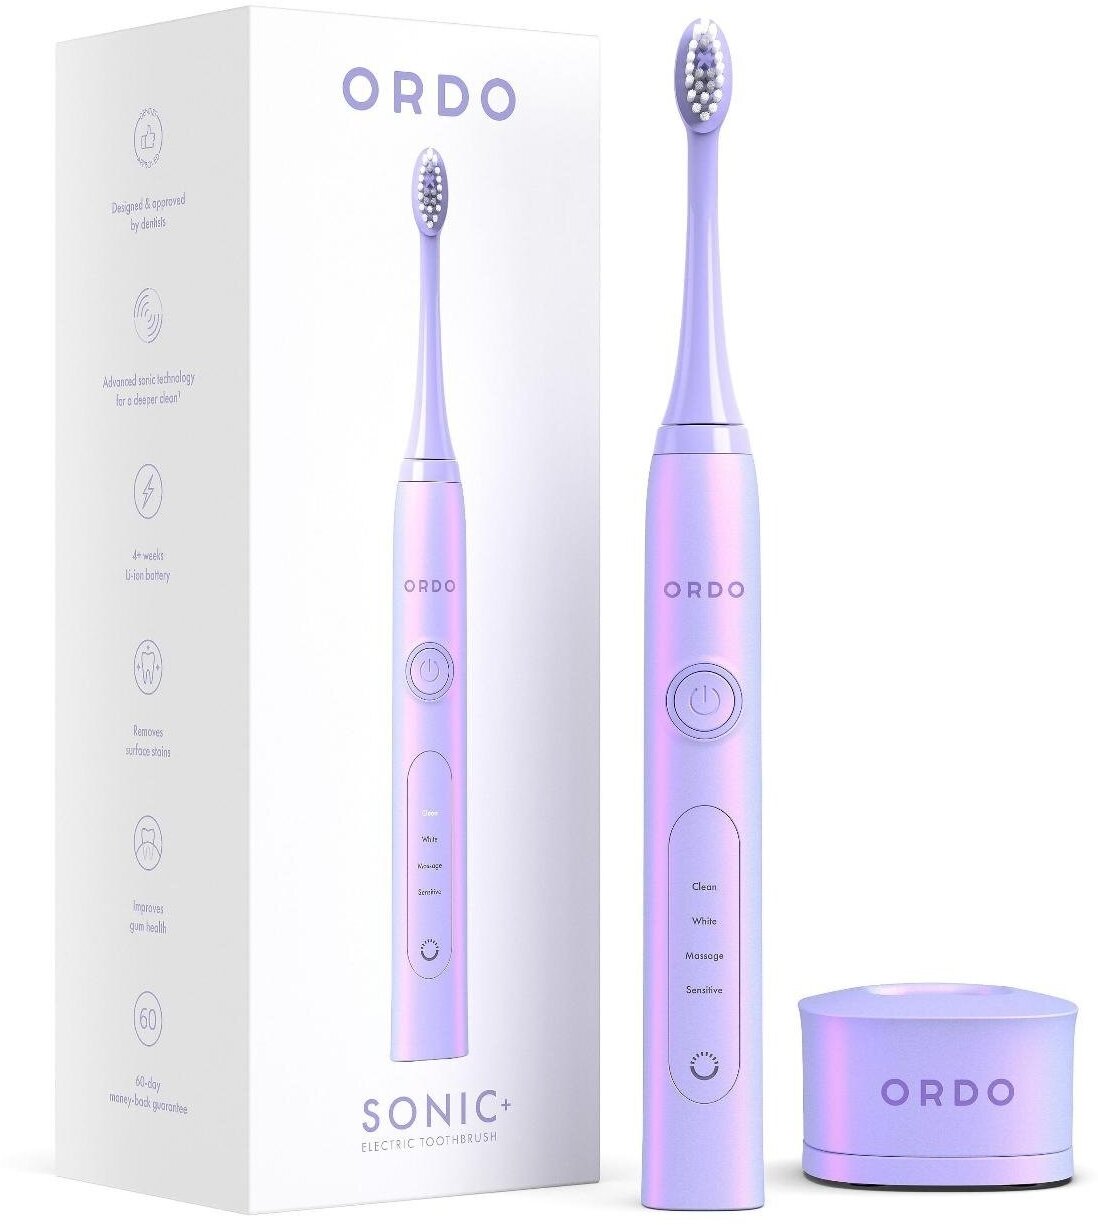 Электрическая зубная щетка ORDO Sonic+ звуковая, 4 режима чистки, таймер на 2 мин, USB зарядка, с влагозащитой, фиолетовая